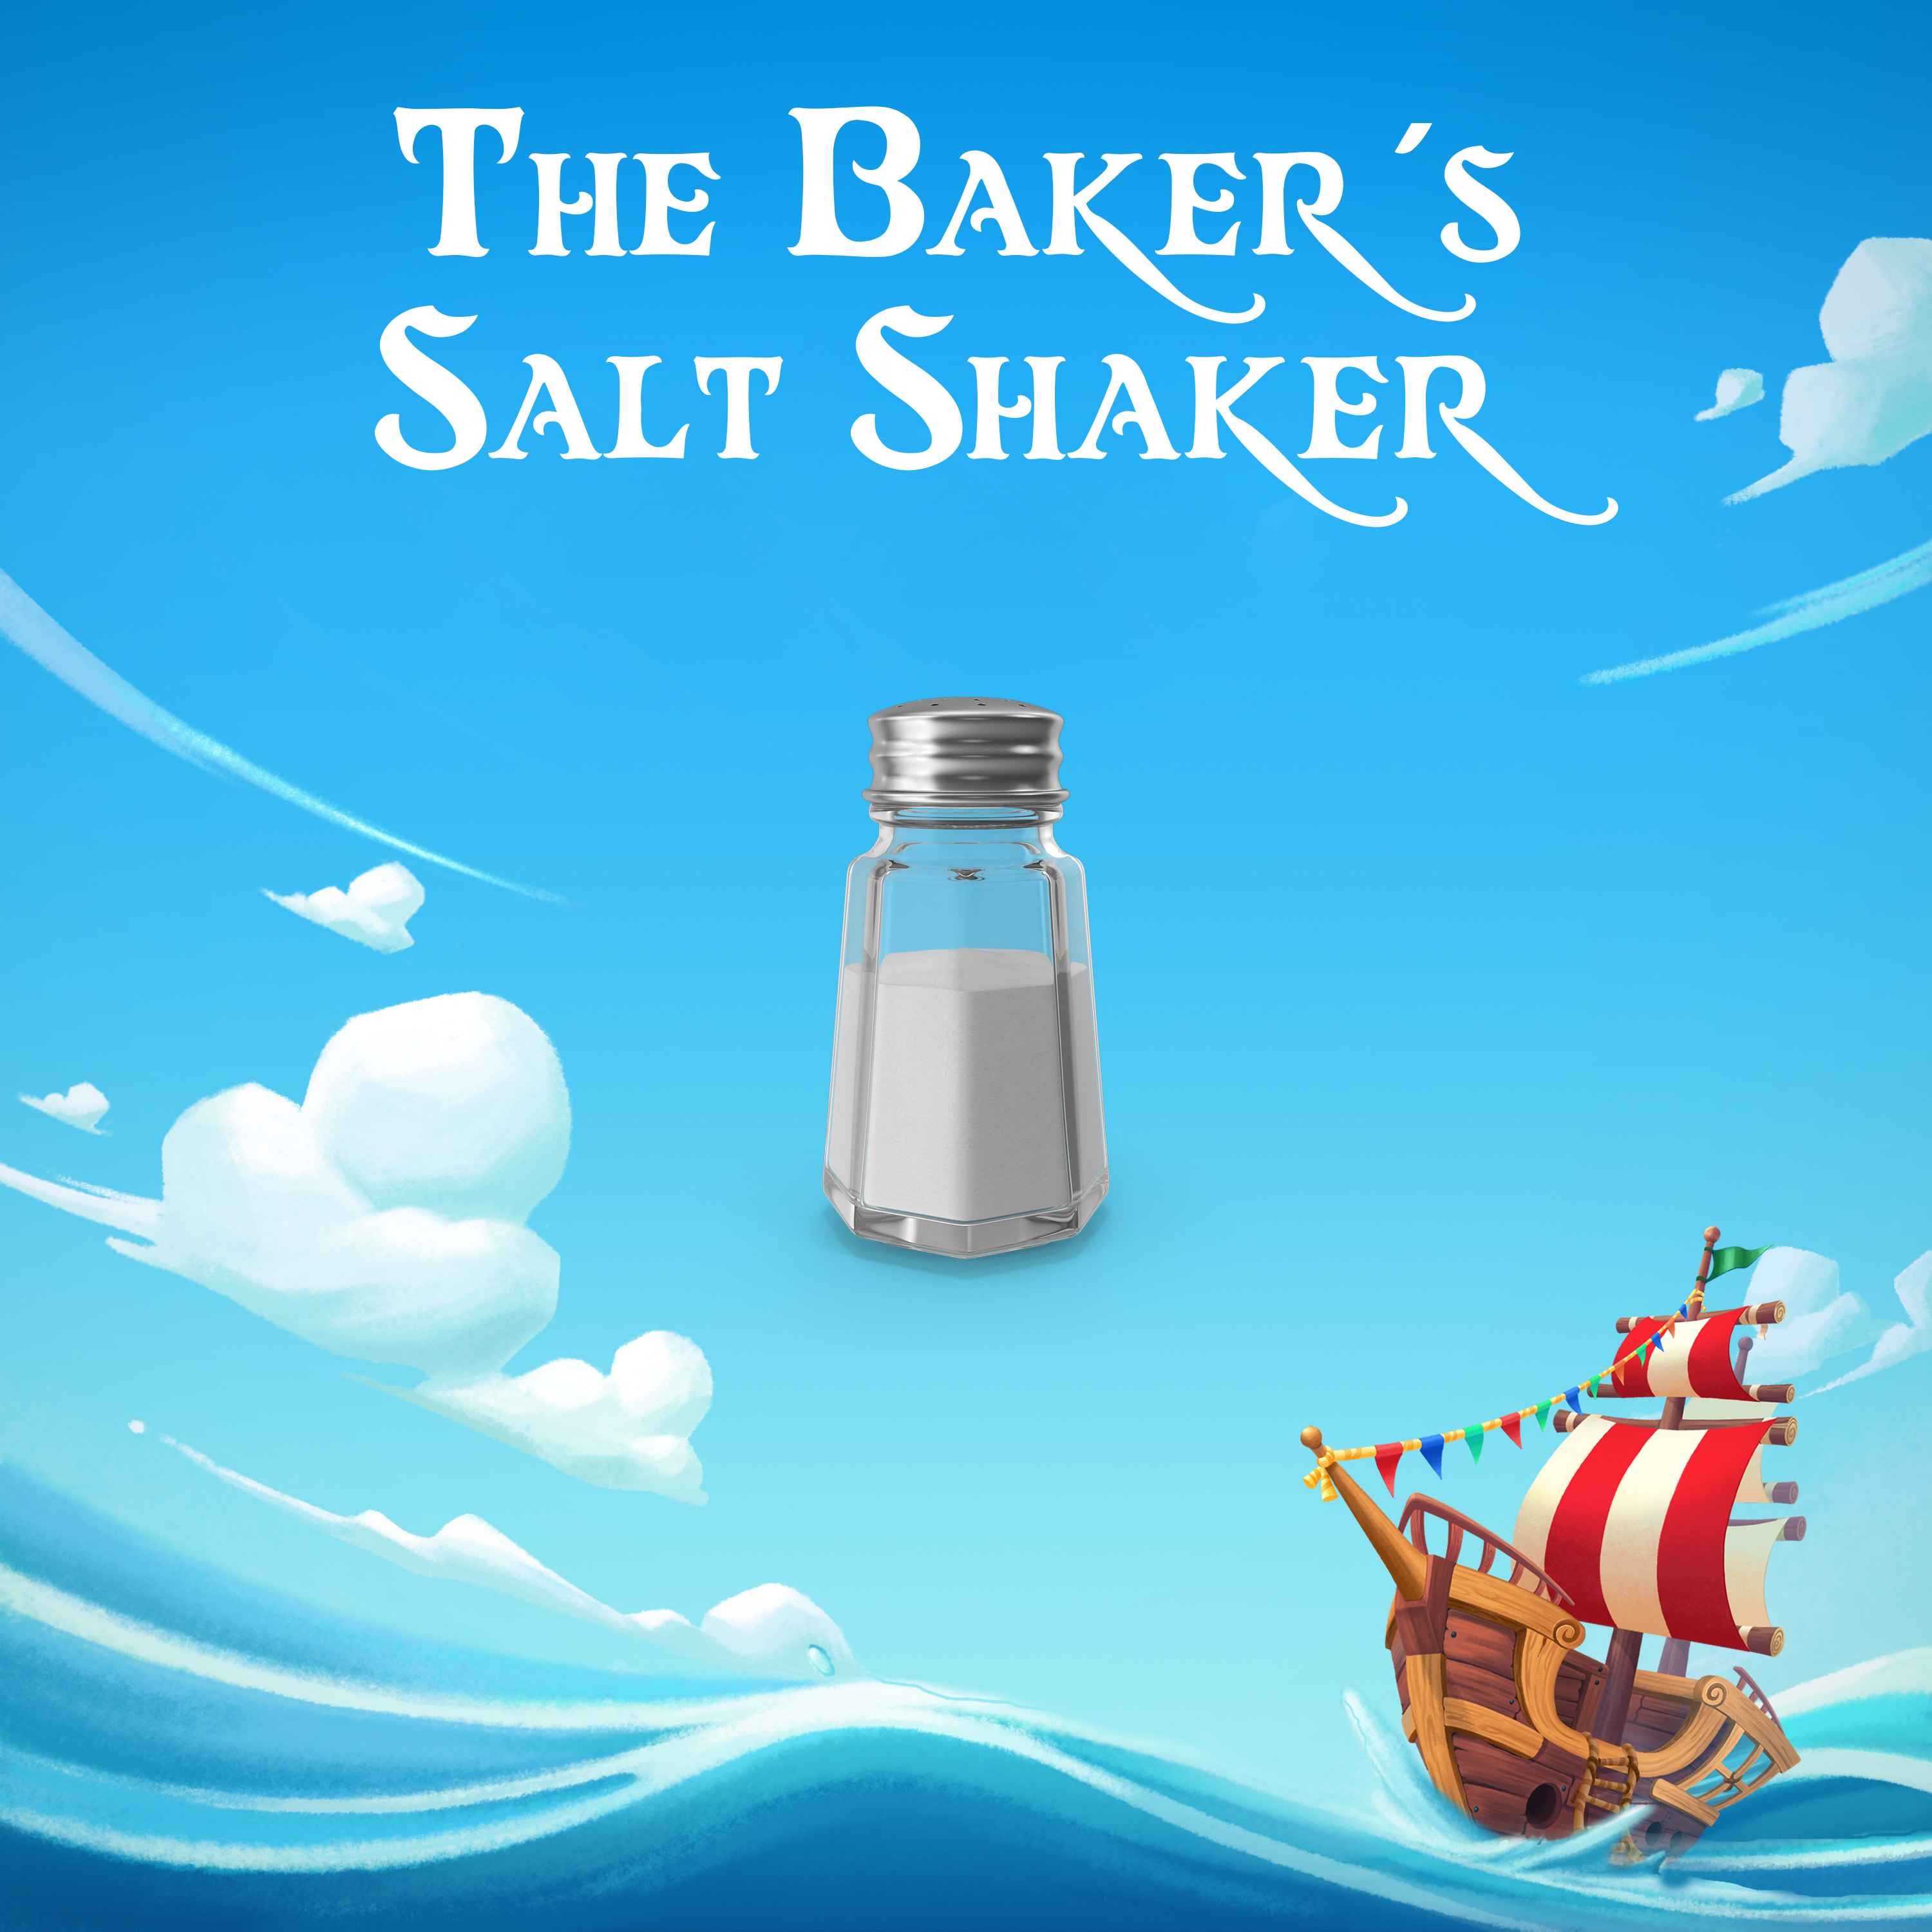 The Baker’s Salt Shaker